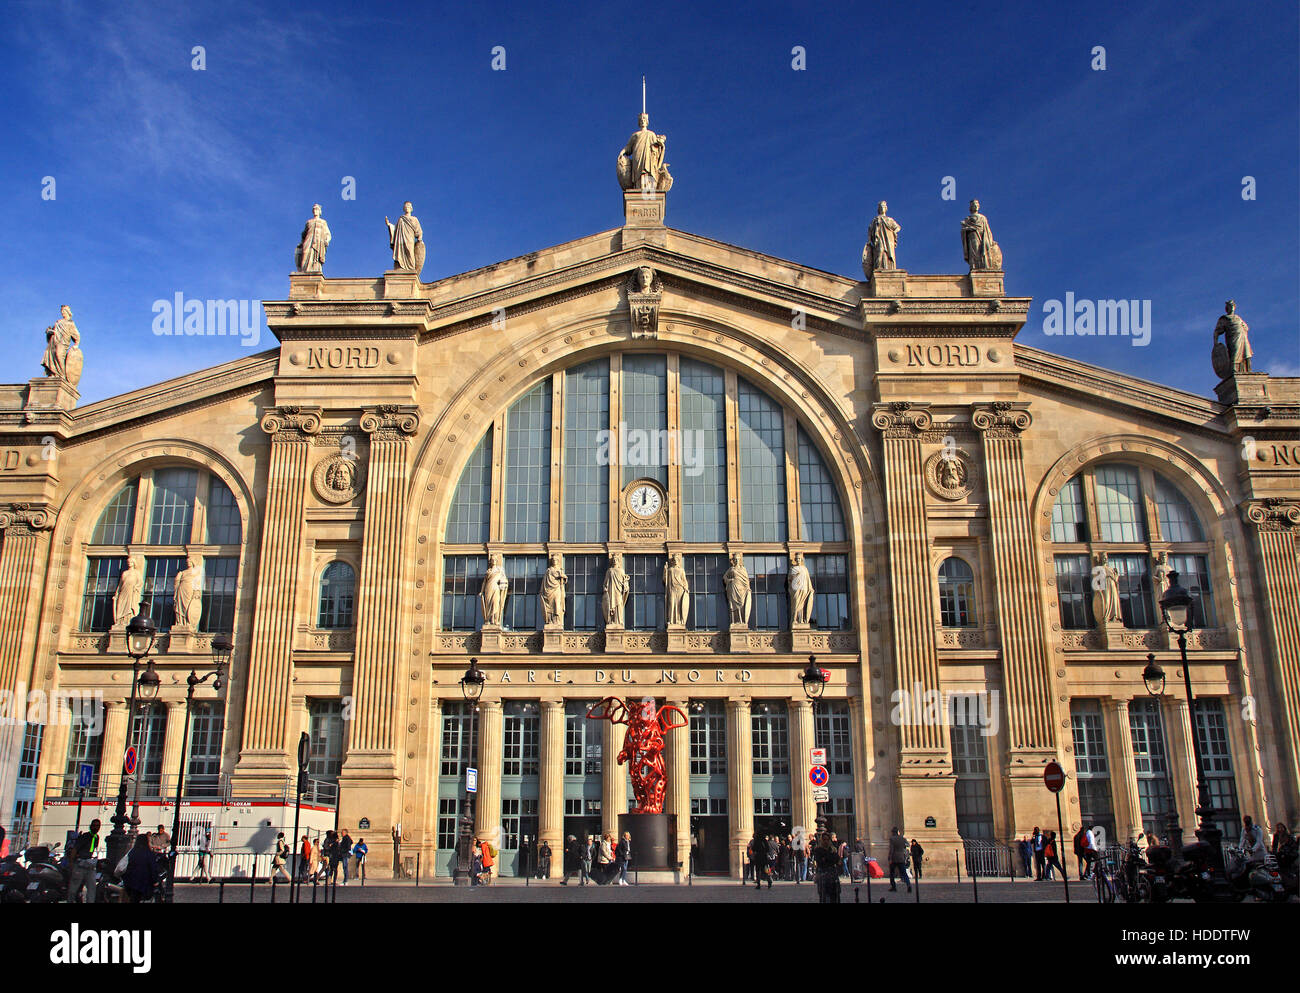 'Détail' à partir de la façade de la Gare du Nord (Gare du Nord) l'bussiest gare en Europe. Paris, France Banque D'Images